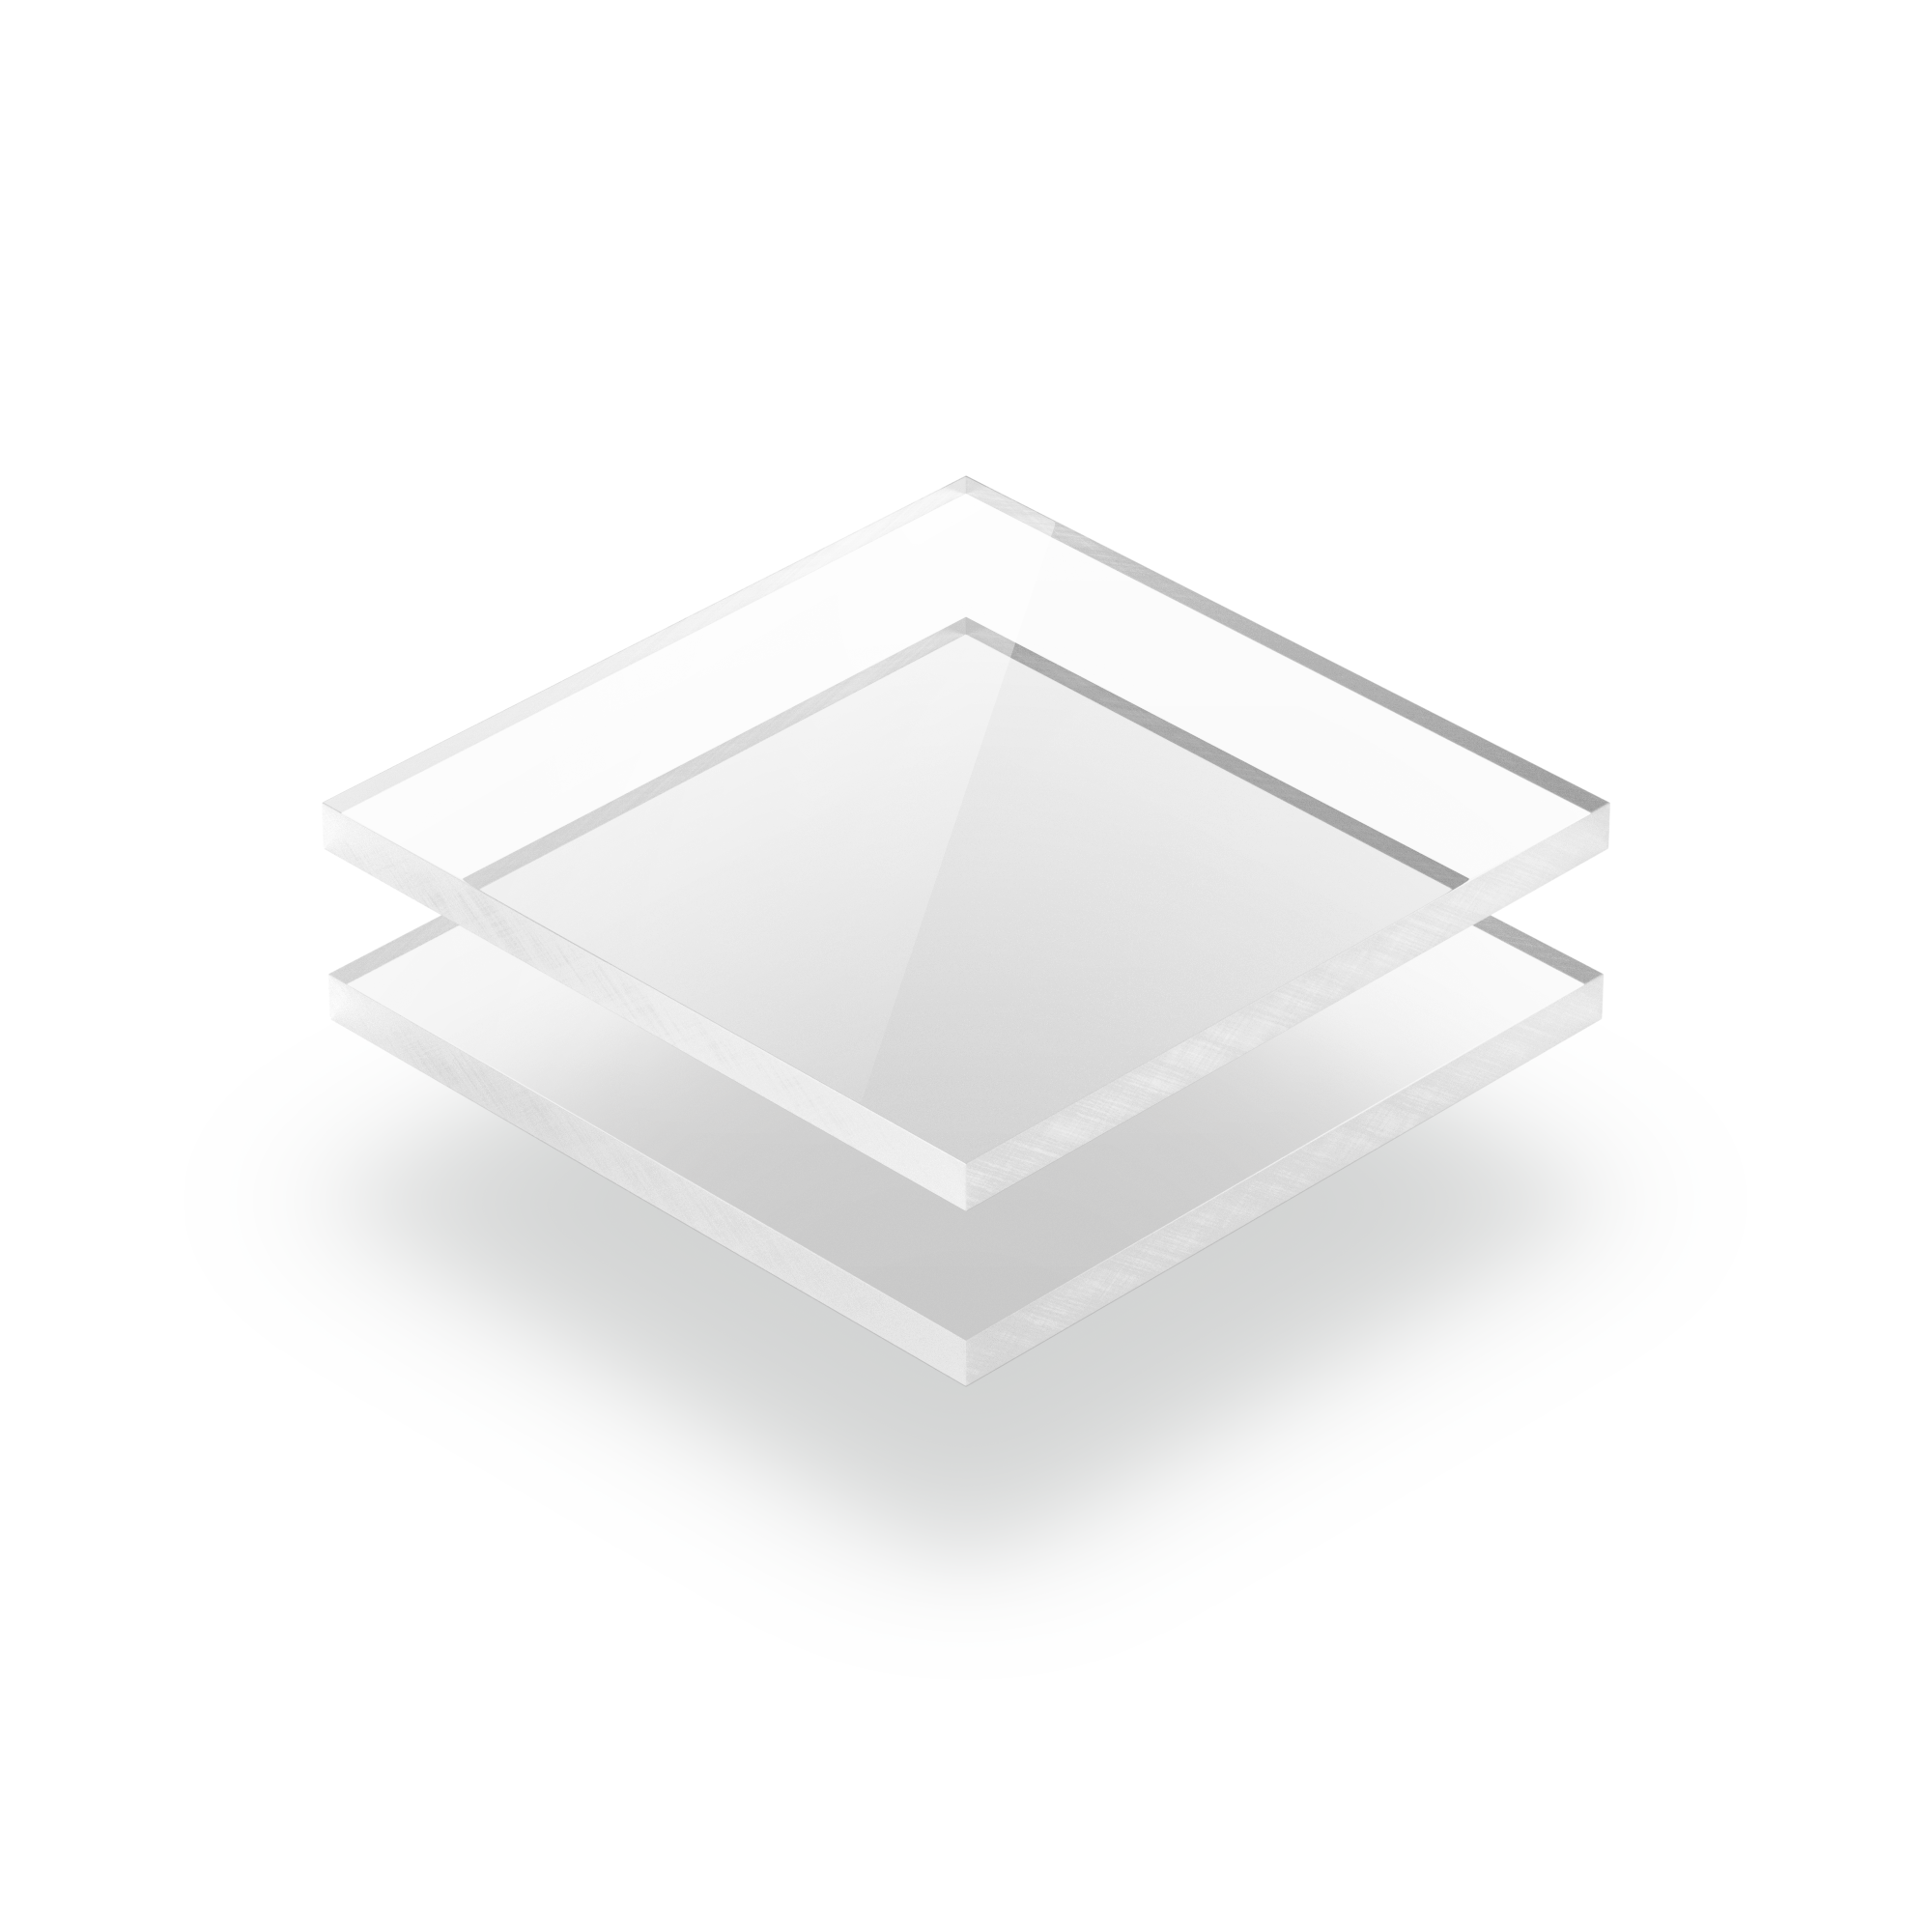 Plaque de plexiglass transparent 6 mm - Plexi PMMA XT Transparent